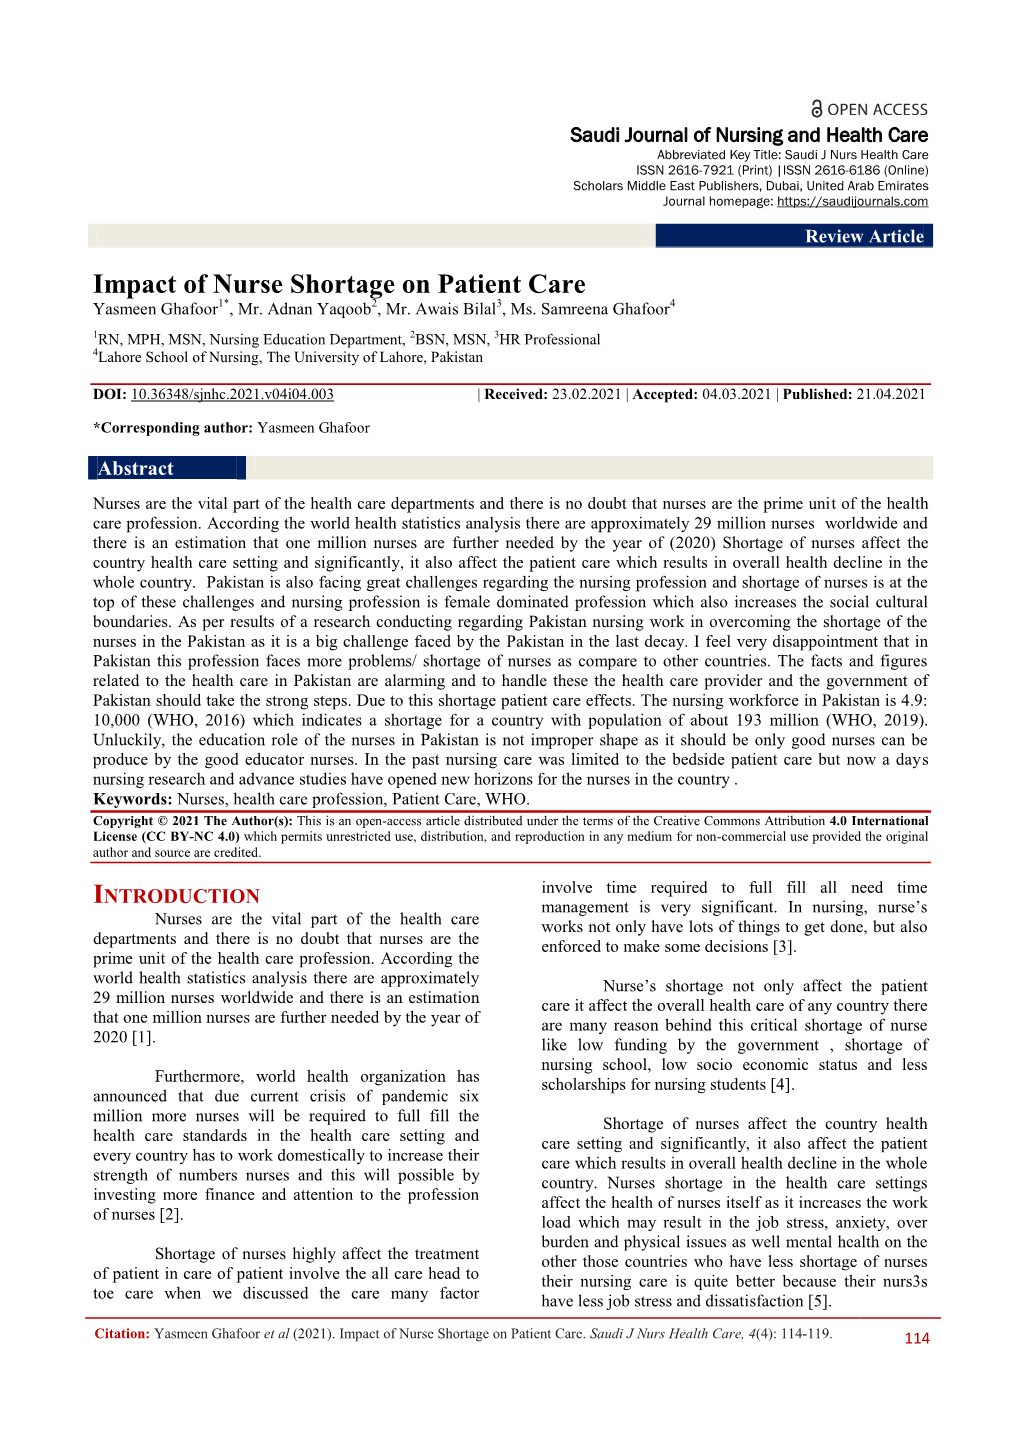 Impact of Nurse Shortage on Patient Care Yasmeen Ghafoor1*, Mr